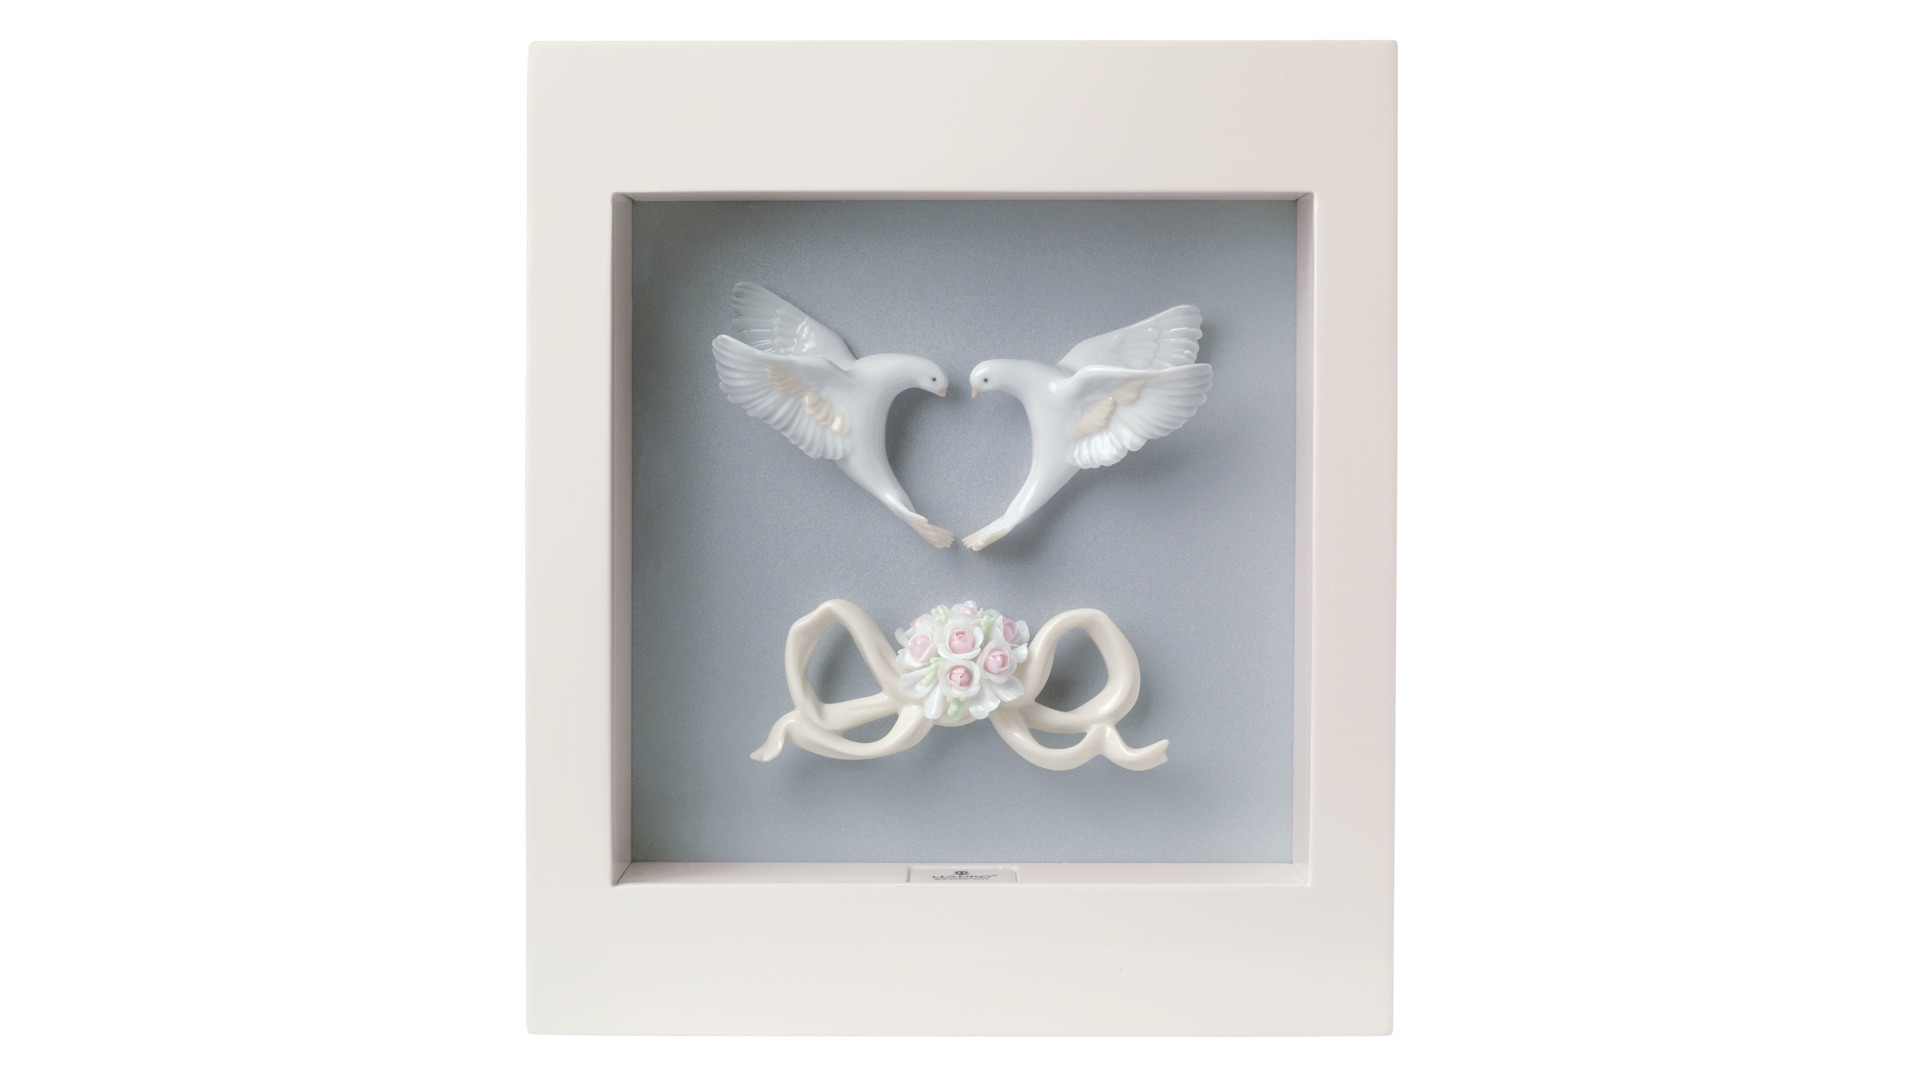 Рамка для фото Lladro Романтические голуби 20х23 см, фарфор